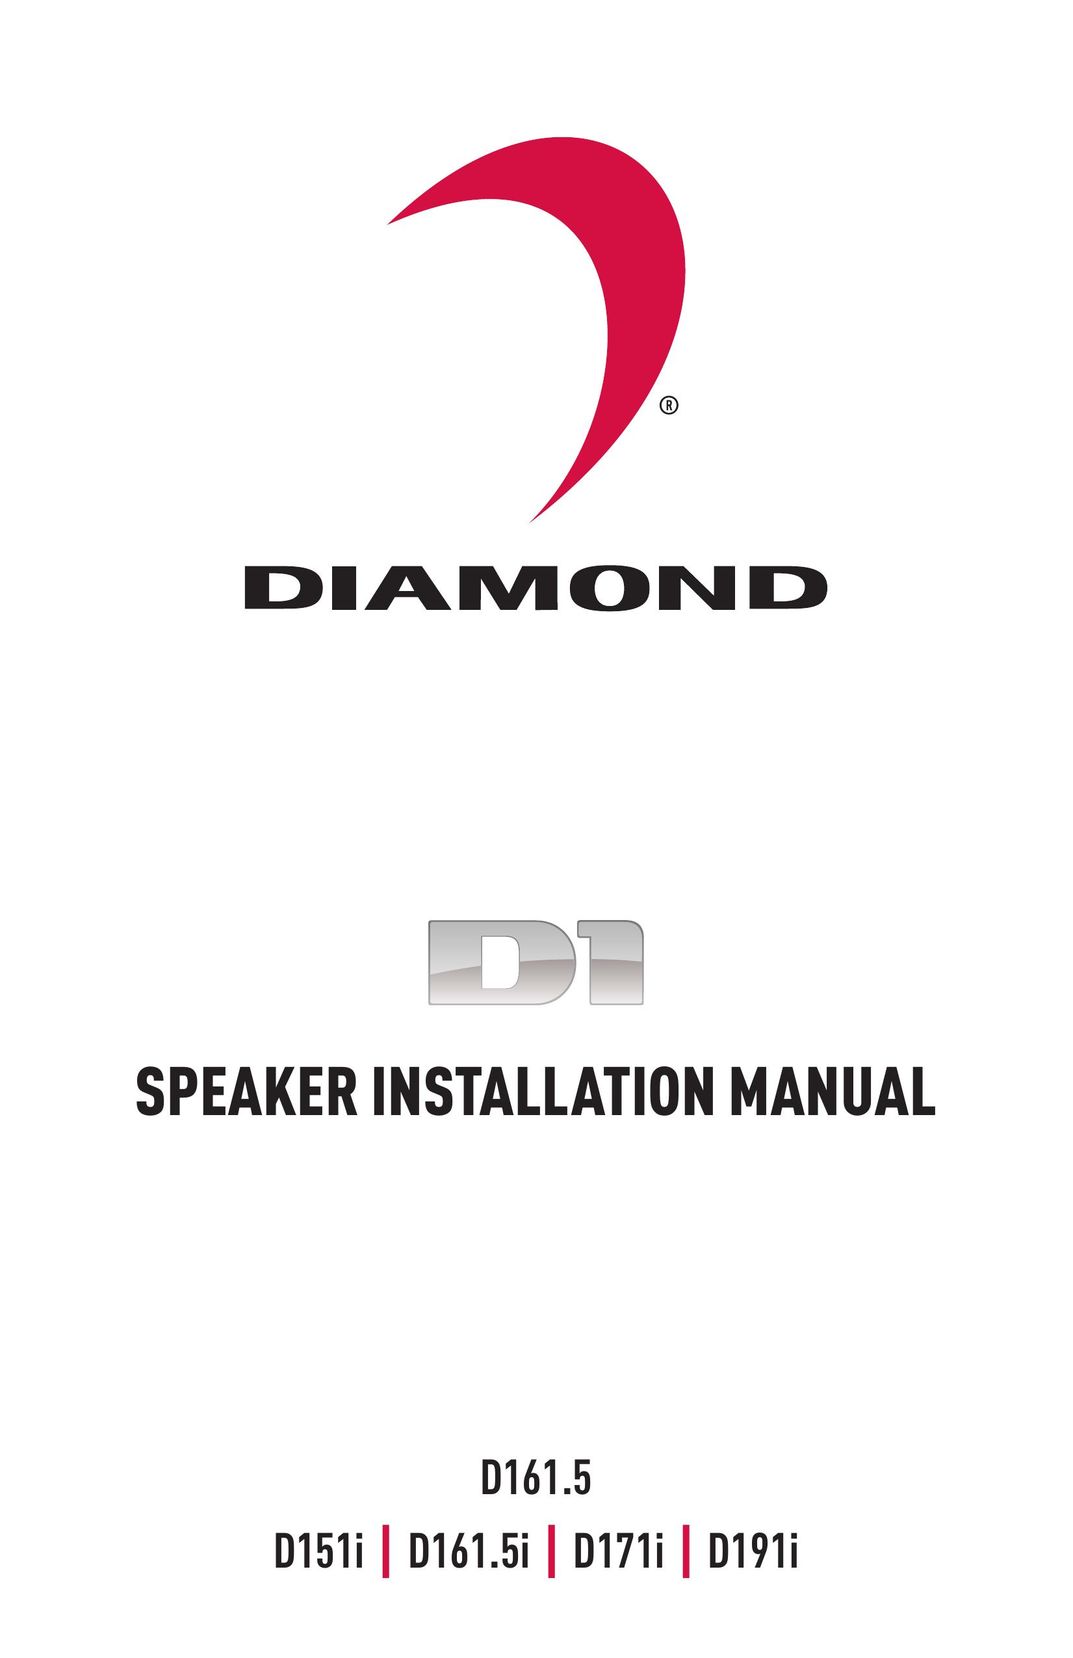 Diamond Audio Technology D151I Speaker User Manual